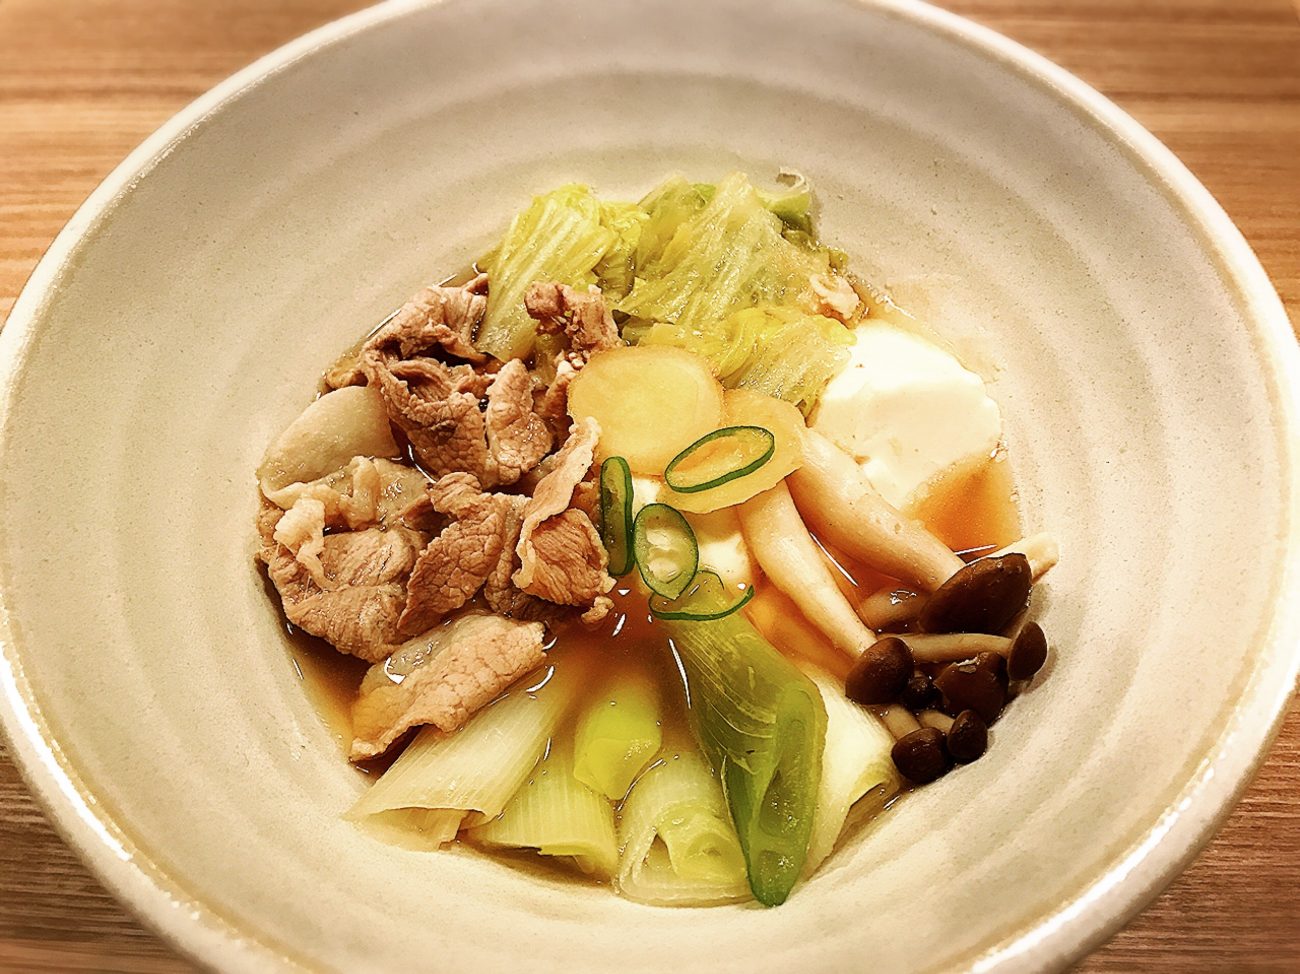 風邪に効く食べ物とは 生姜スープのねぎ豚煮込みの簡単レシピ Ruri S Cooking Official Site